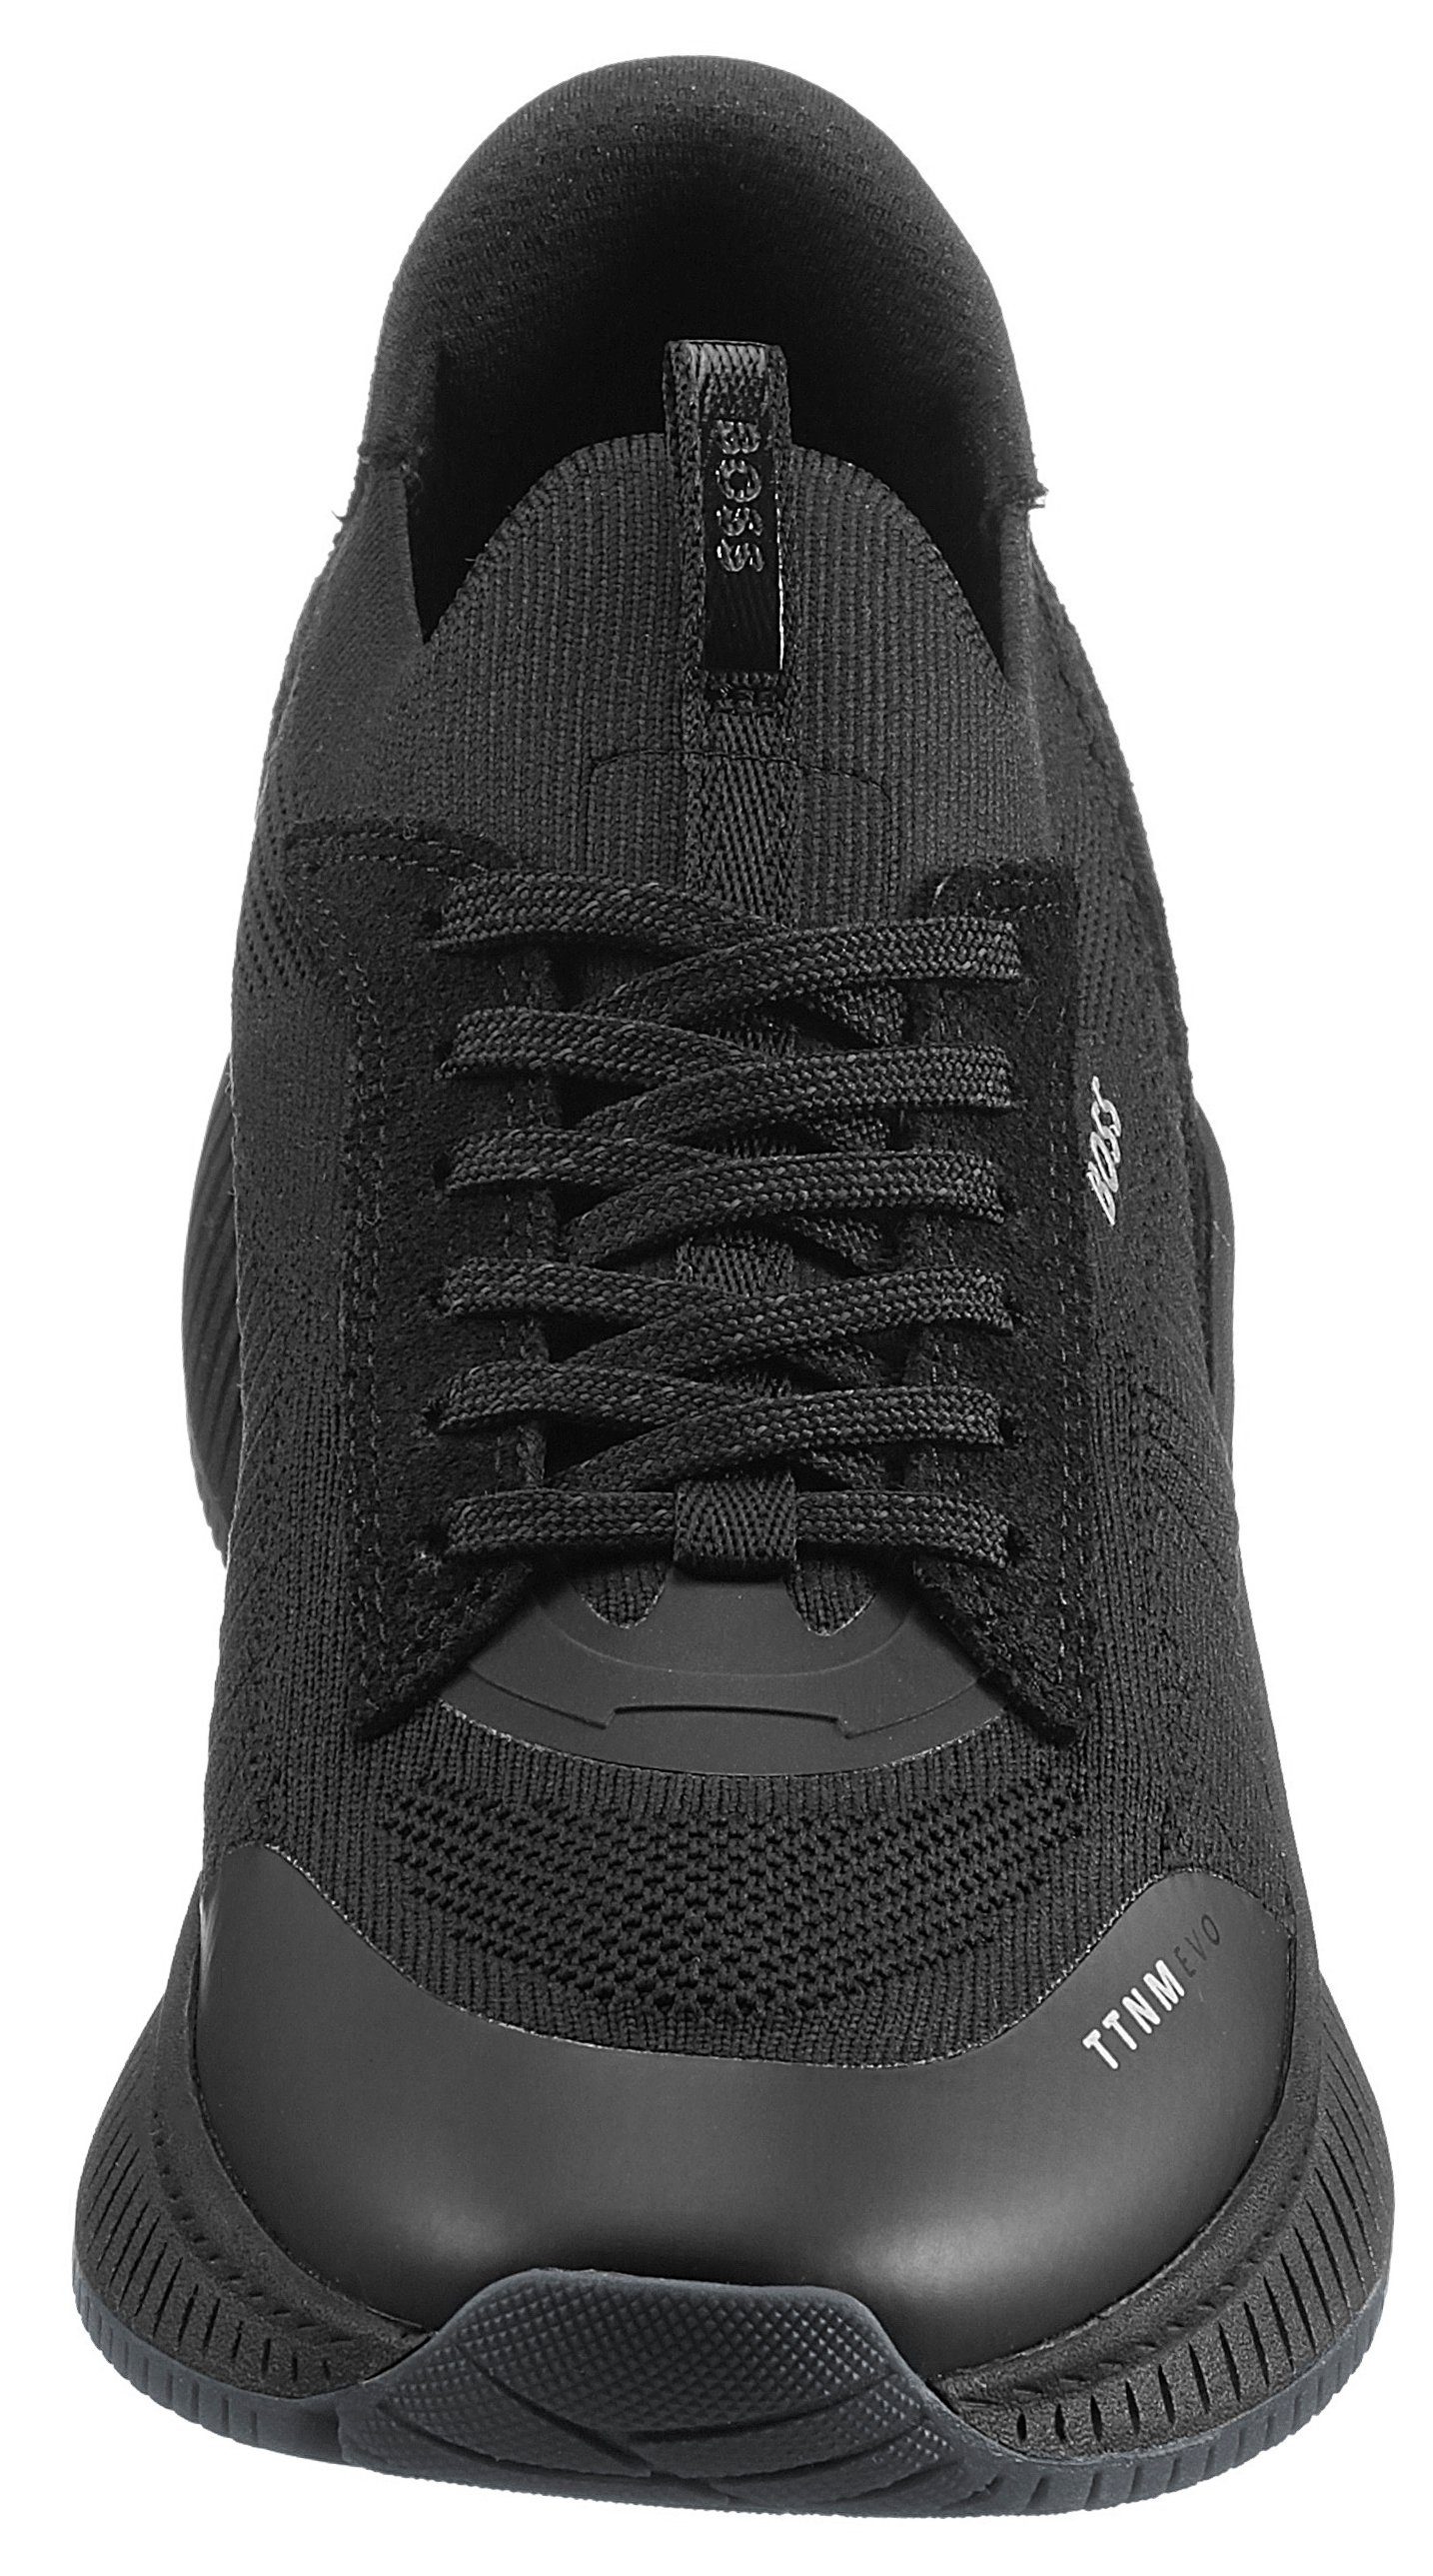 Laufsohle mit Slon Sneaker TTNM EVO schwarz leichter BOSS Slip-On